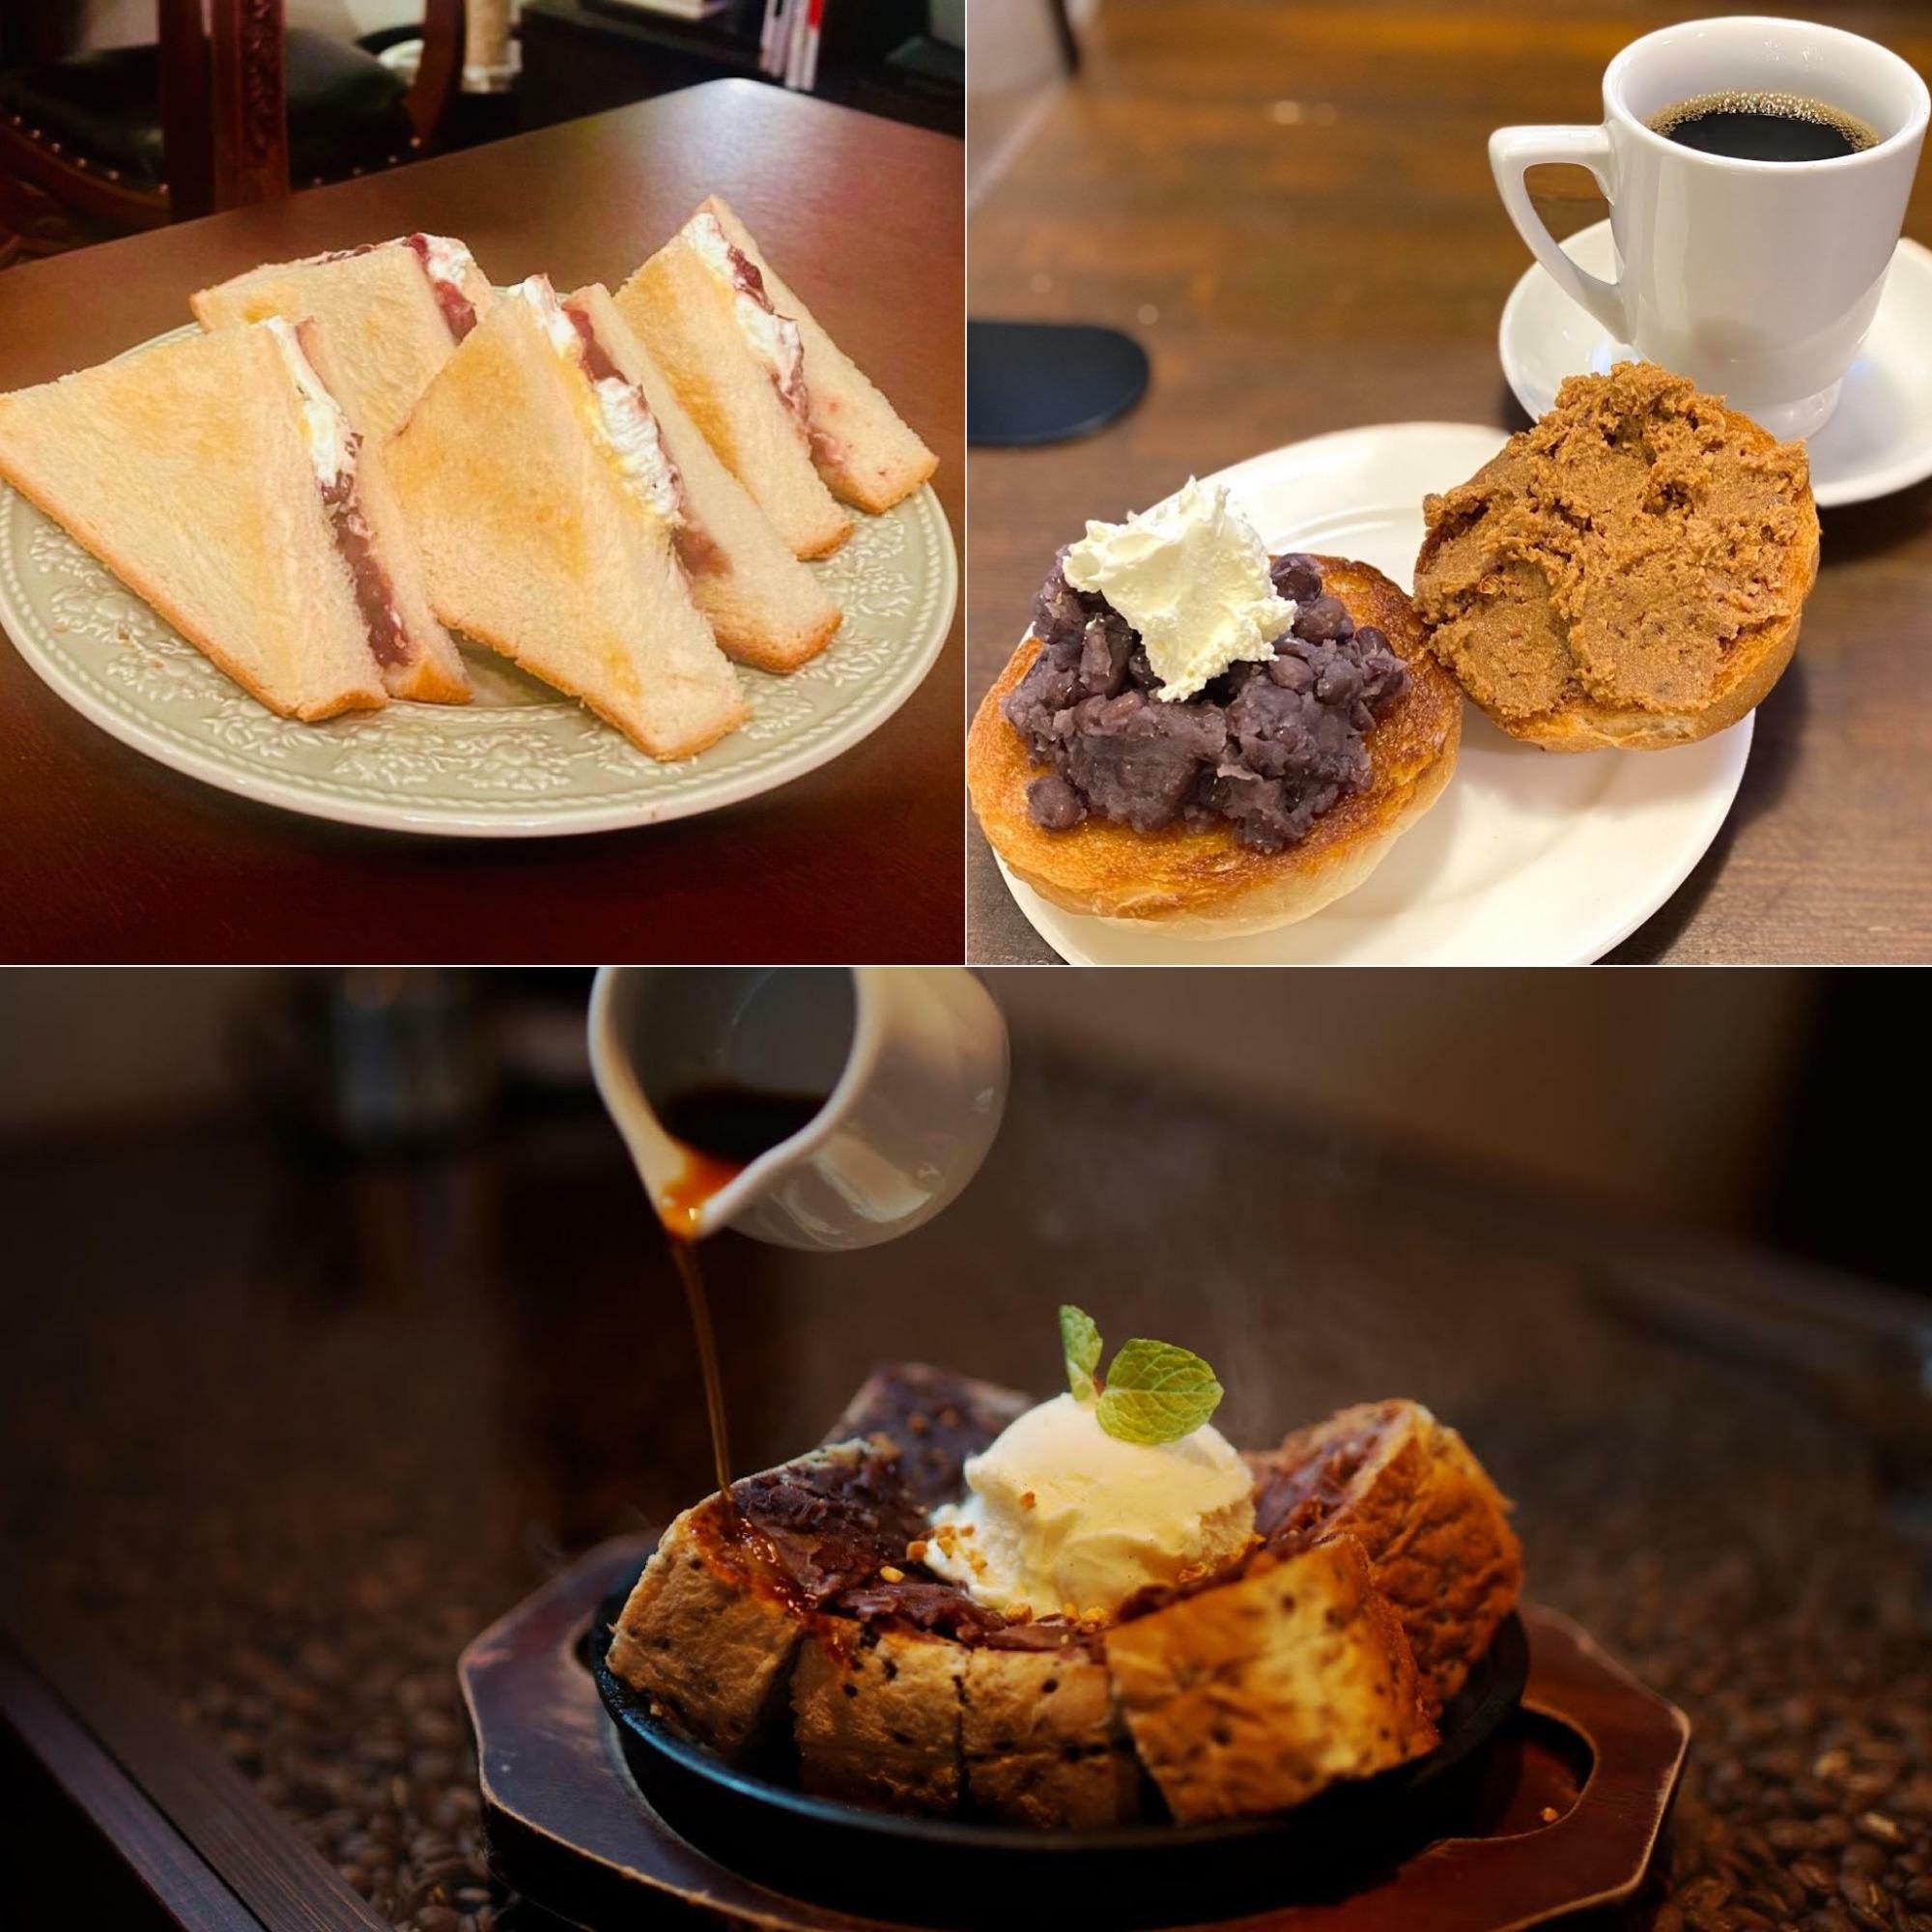 茶色くて甘いもの、でもチョコではなく、あんこが主役の名古屋の喫茶店グルメ。第2回でも人気店の名物メニューが大阪上陸!